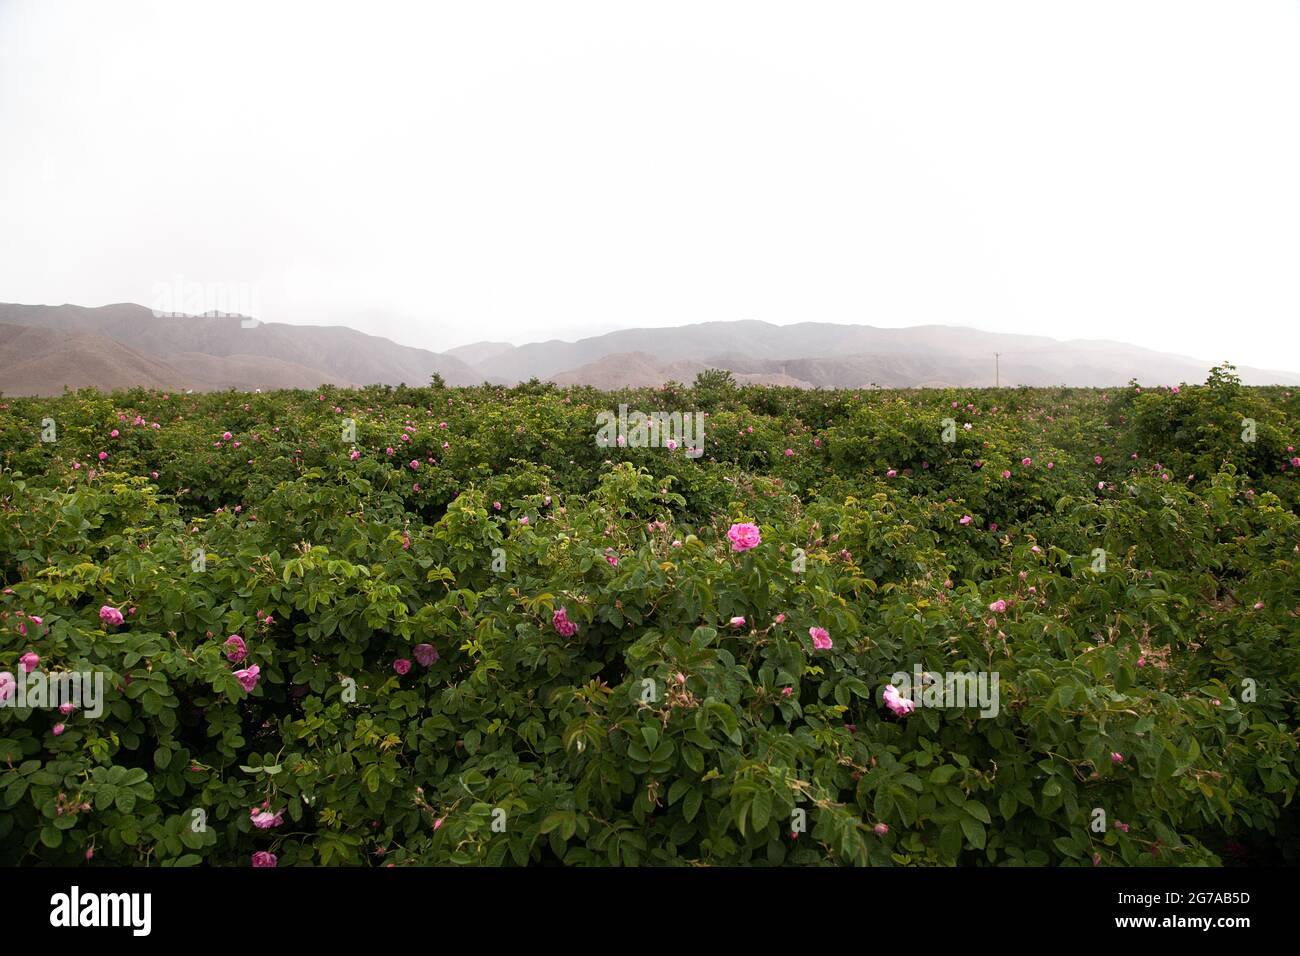 Para hacer agua de rosas y aceite de rosas, hombres y mujeres en Irán van a los campos para cosechar cada mes de mayo. La ciudad de Ghamsar es conocida por sus rosas de alta calidad. Foto de stock